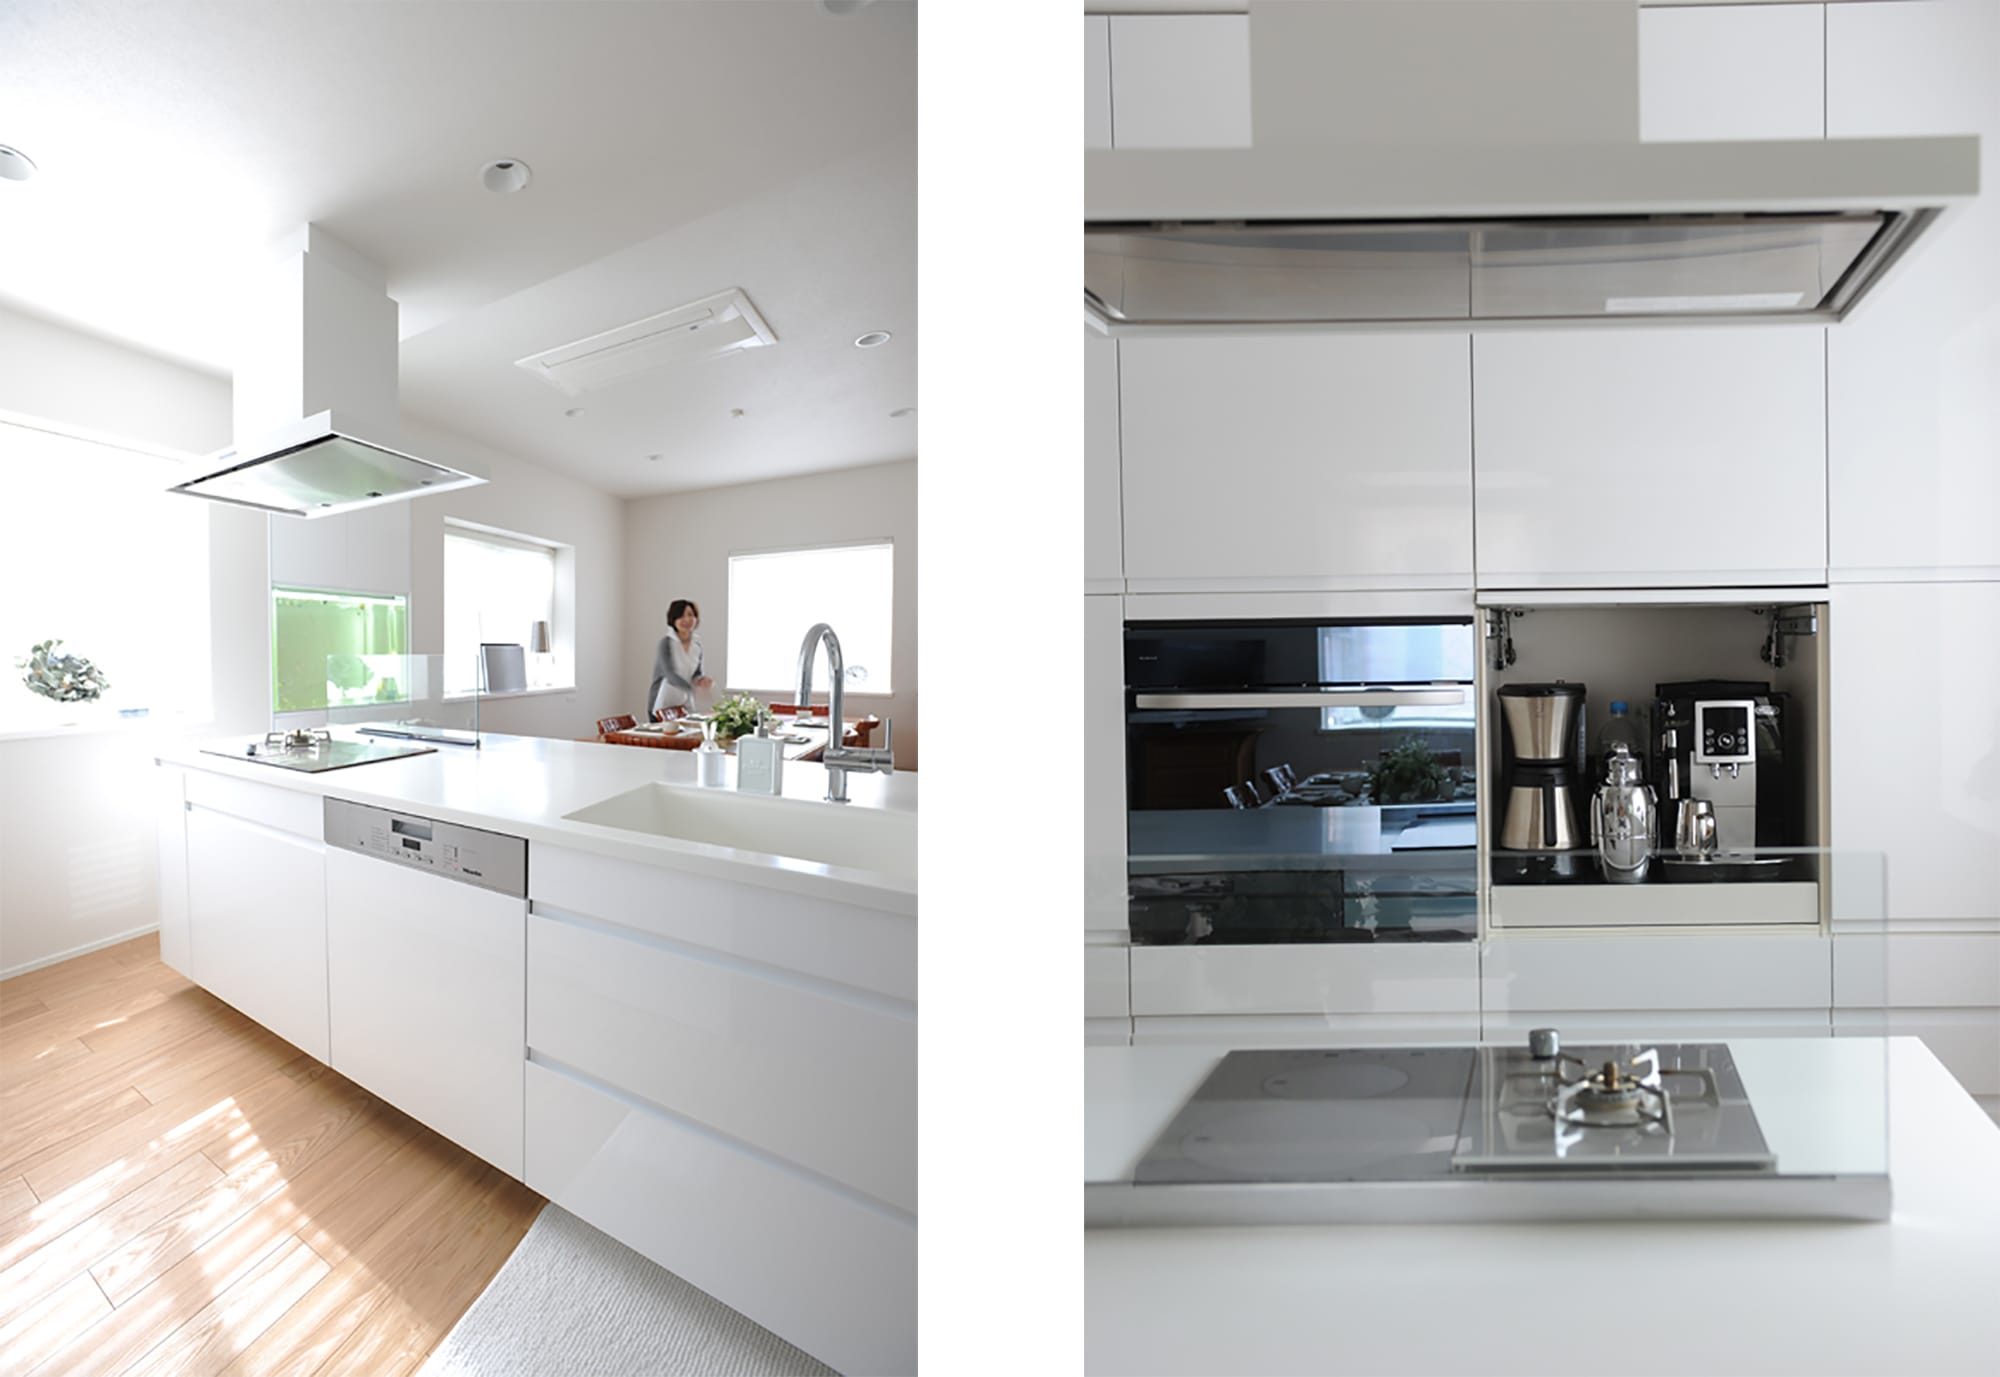 左：シンクまで真っ白なキッチン。左手にある水槽はキッチンと一緒に制作したもの。右：使いやすさを優先し、コーヒーマシンは目の高さに設置。その上の棚にはコーヒー豆や茶葉がストックされている。キッチン製作＝クチーナ／住宅設計＝三菱地所ホームPhotography by Yukinori Okamura